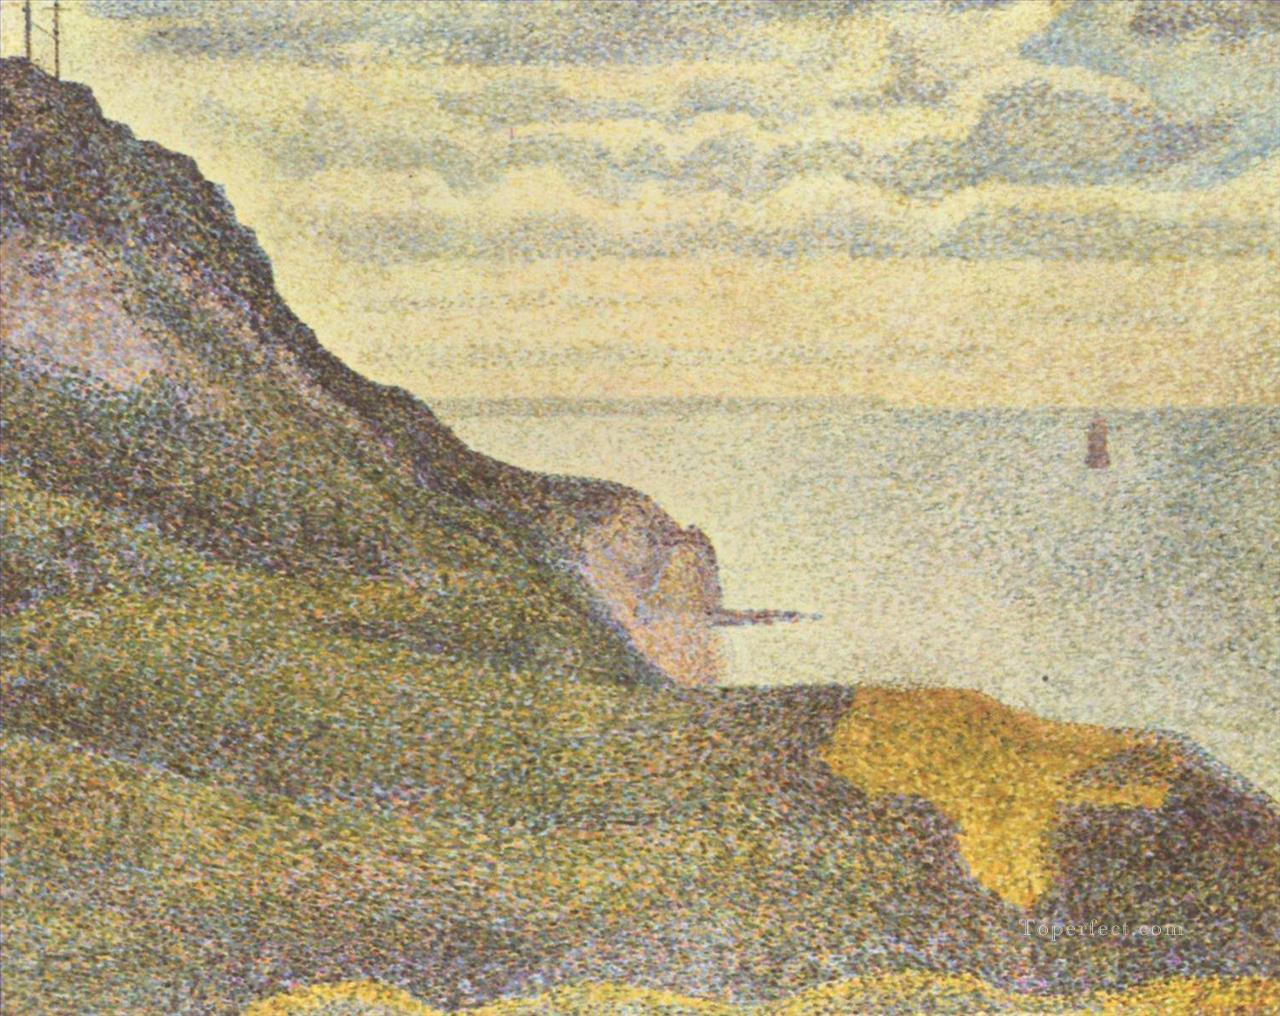 Port en Bessin el semáforo y acantilados 1888 Pintura al óleo